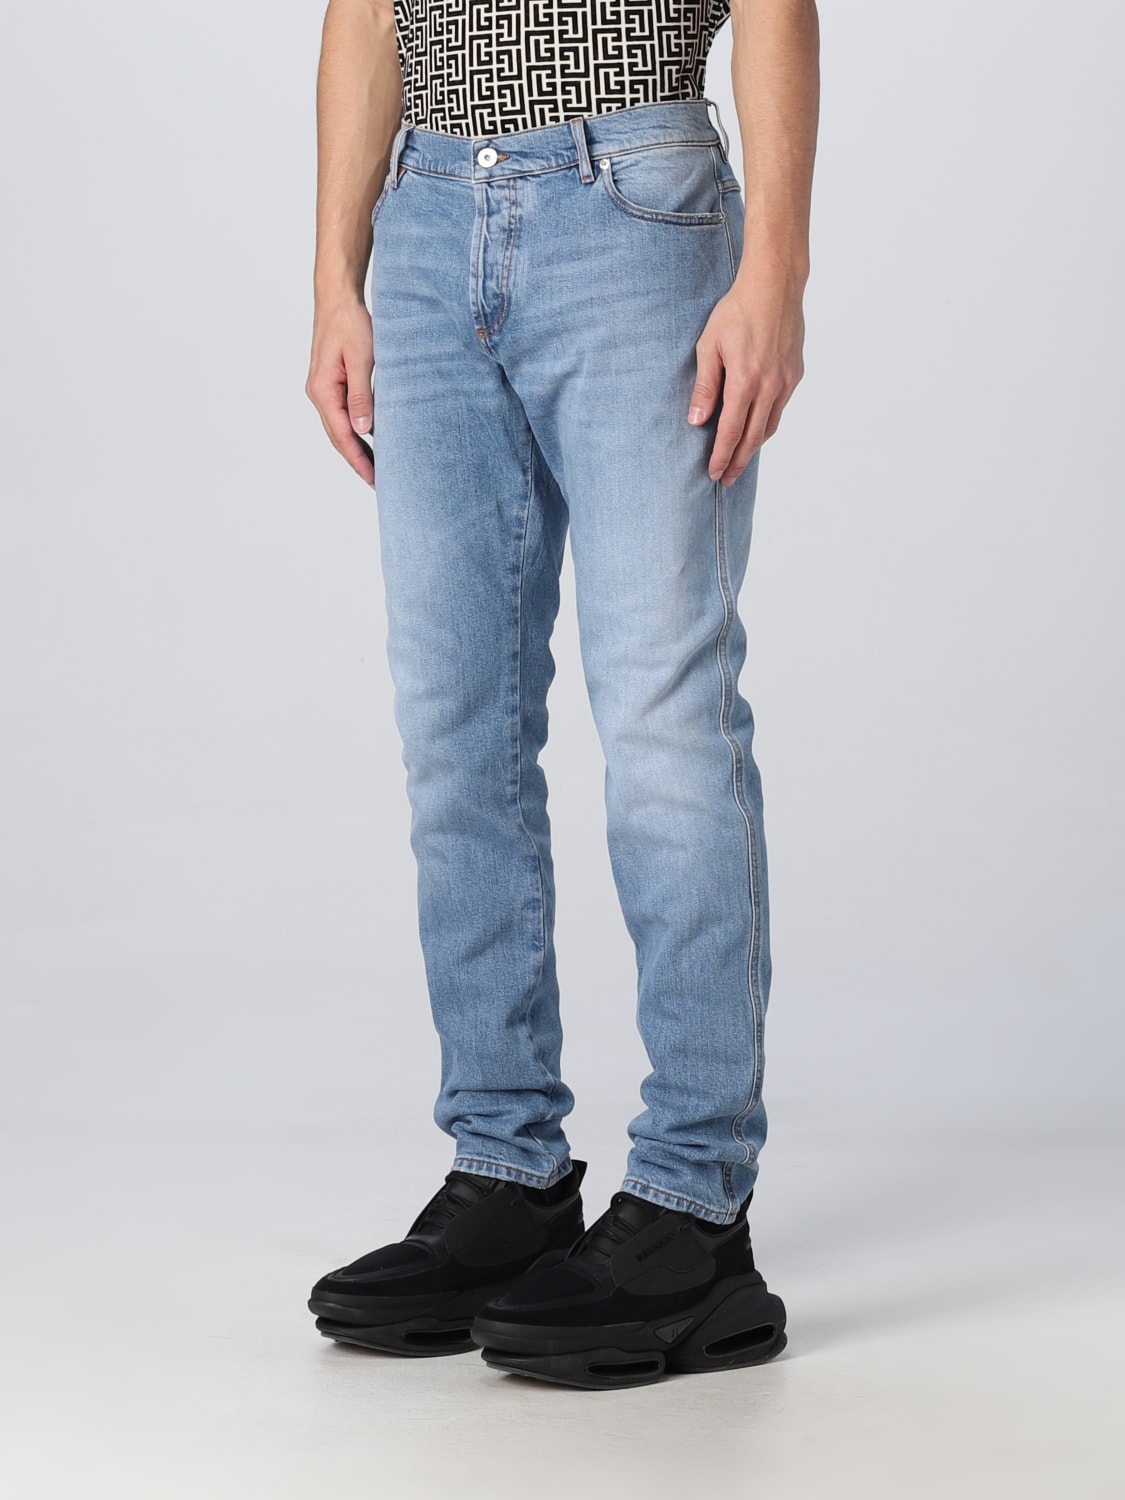 burst udvide arbejder BALMAIN: denim jeans - Blue | Balmain jeans AH1MG000DC99 online at  GIGLIO.COM